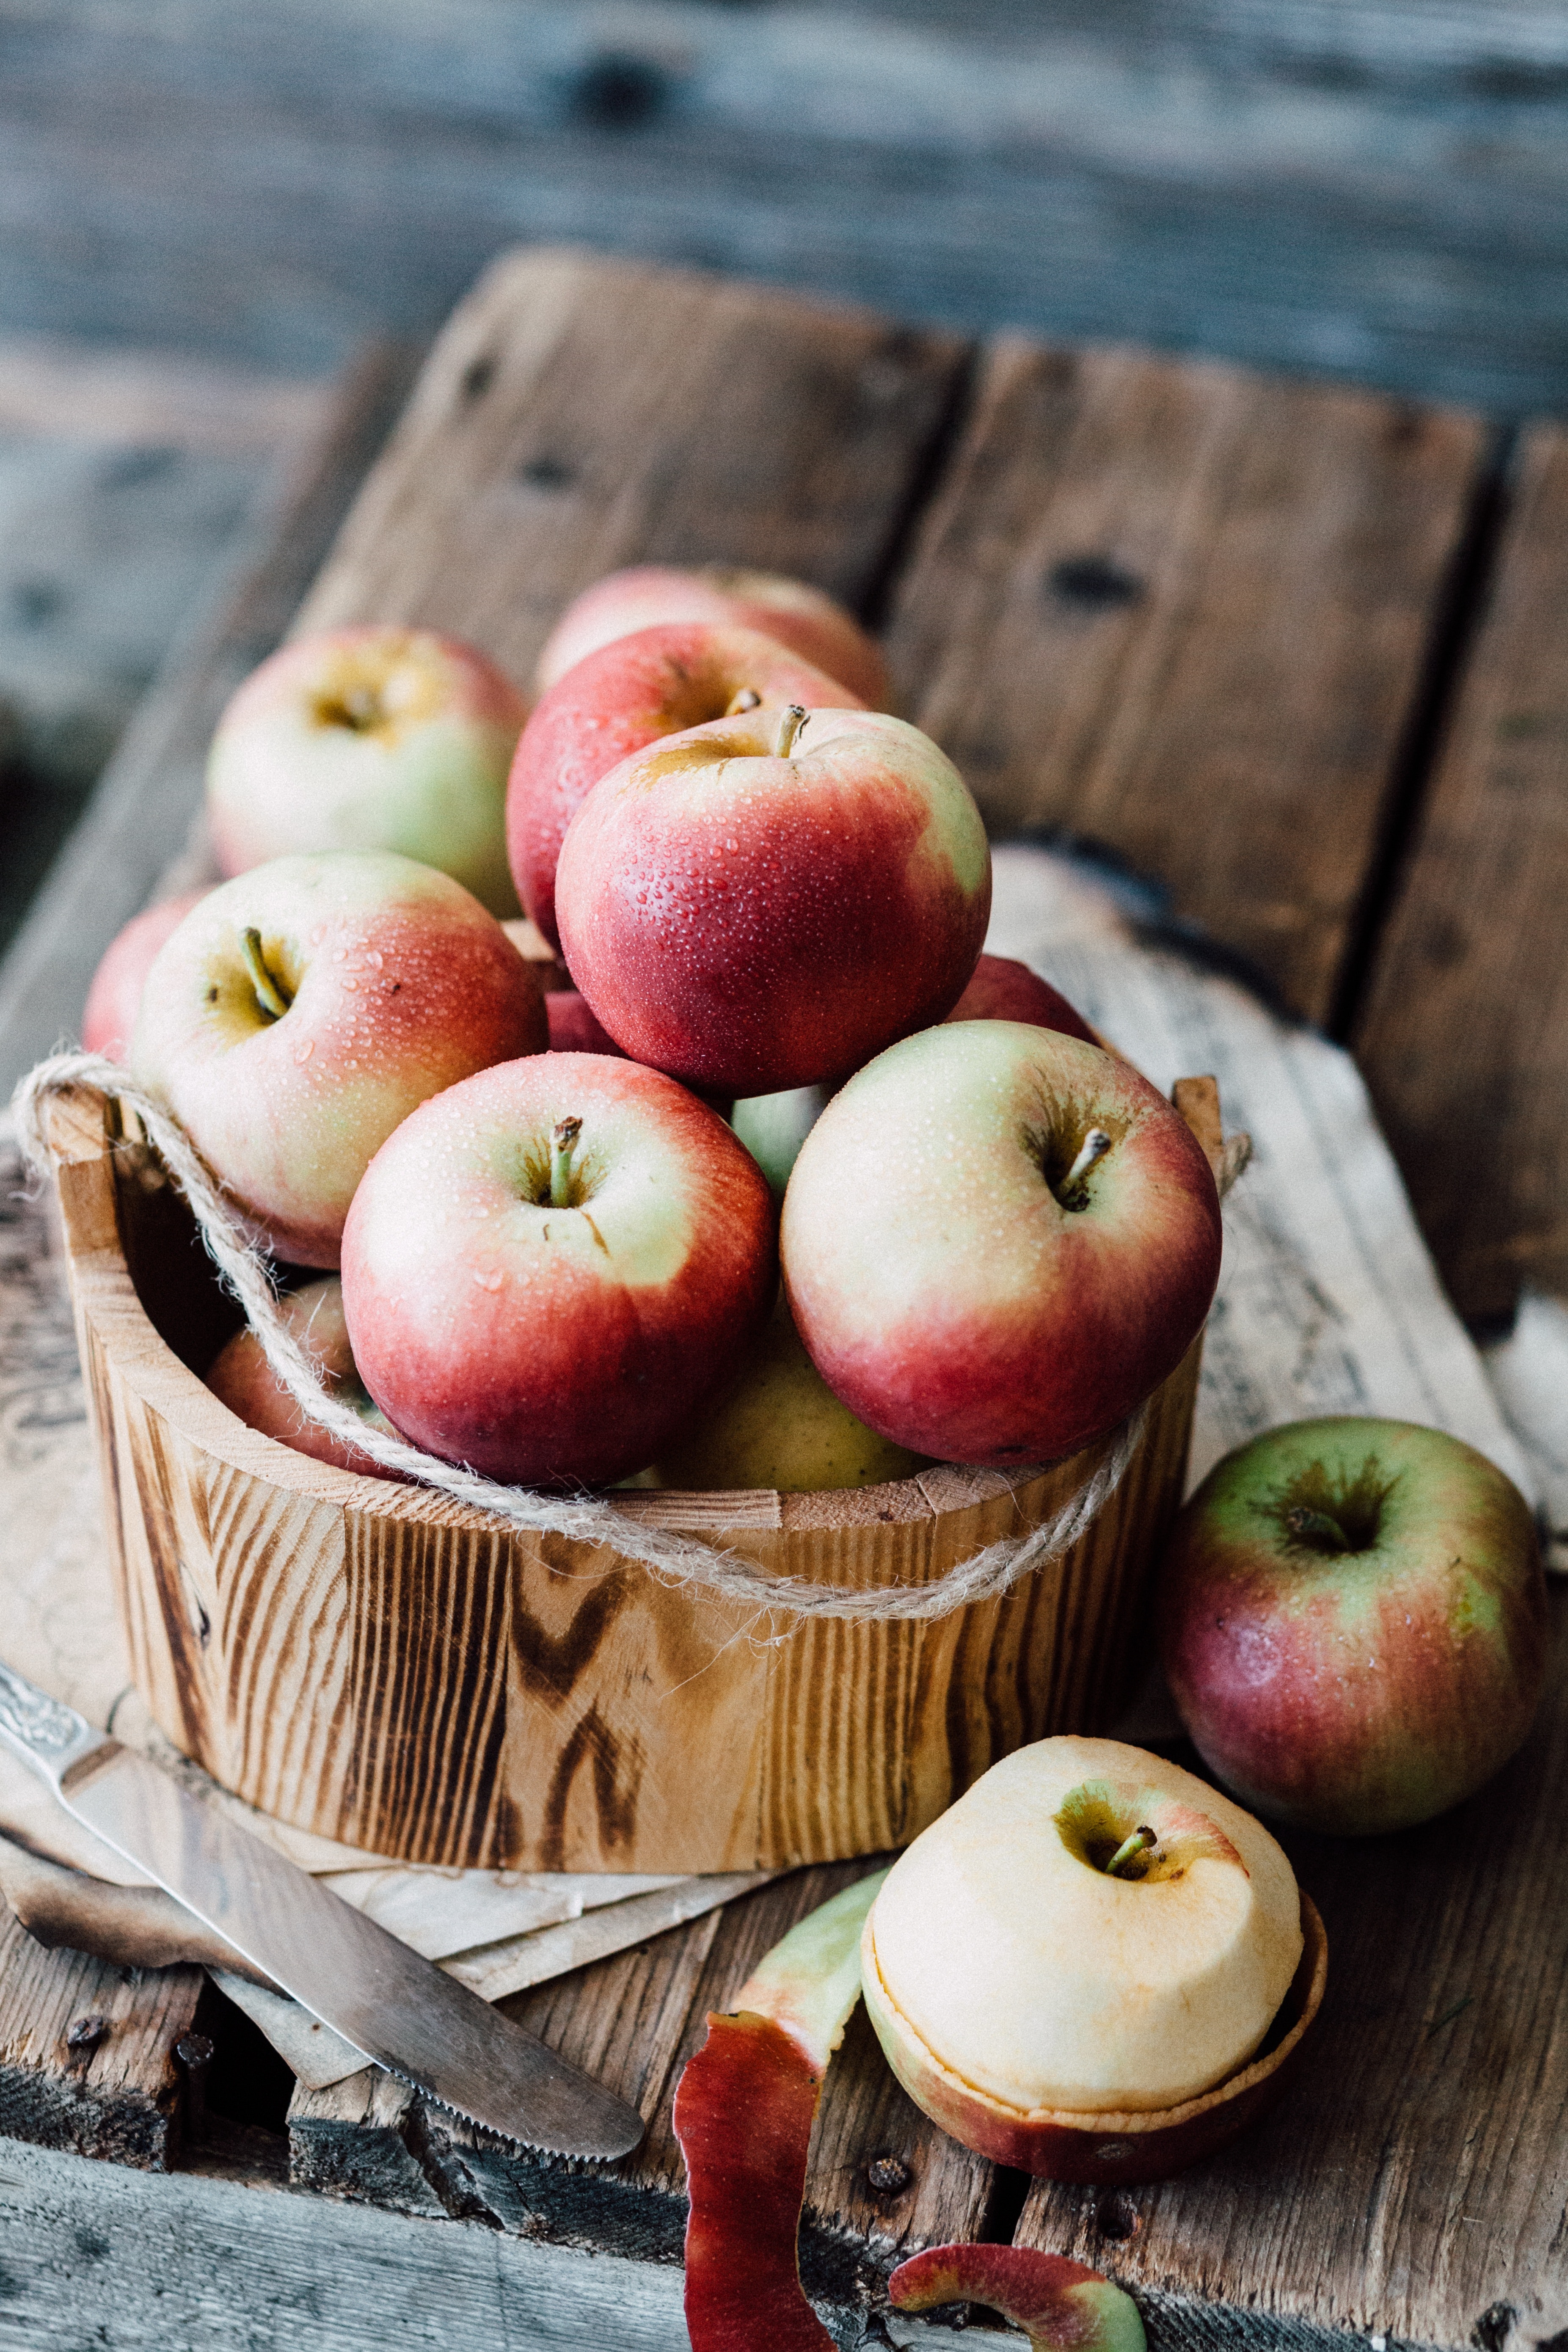 एका मध्यम आकाराच्या सफरचंदात सुमारे ४.५ ग्रॅम फायबर असते, परंतु जेव्हा या सफरचंदाची साल काढली जाते तेव्हा या फळातील फायबरचे प्रमाण फक्त २ ग्रॅम राहते.